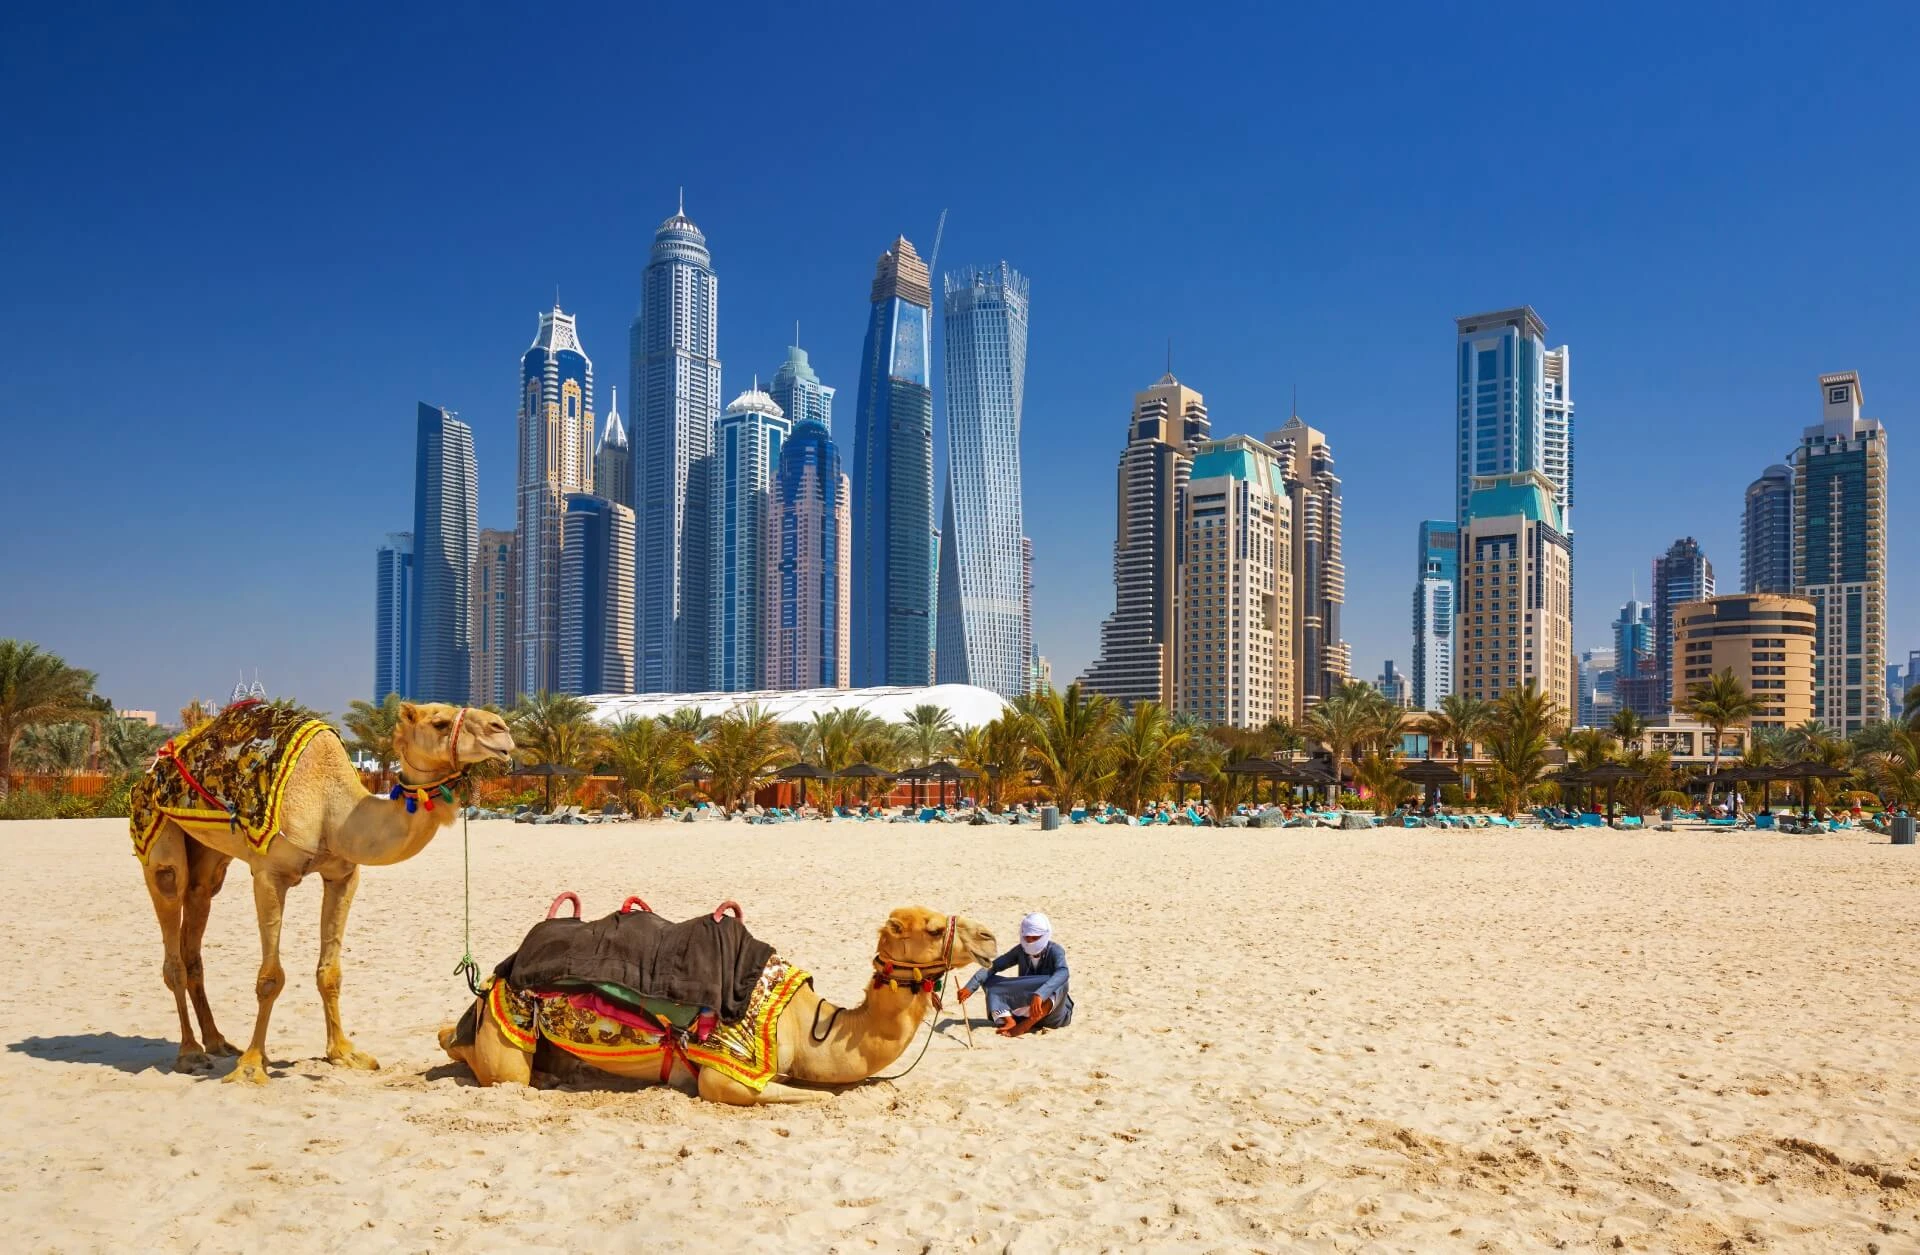 Die besten kostenlosen Aktivitäten in Dubai